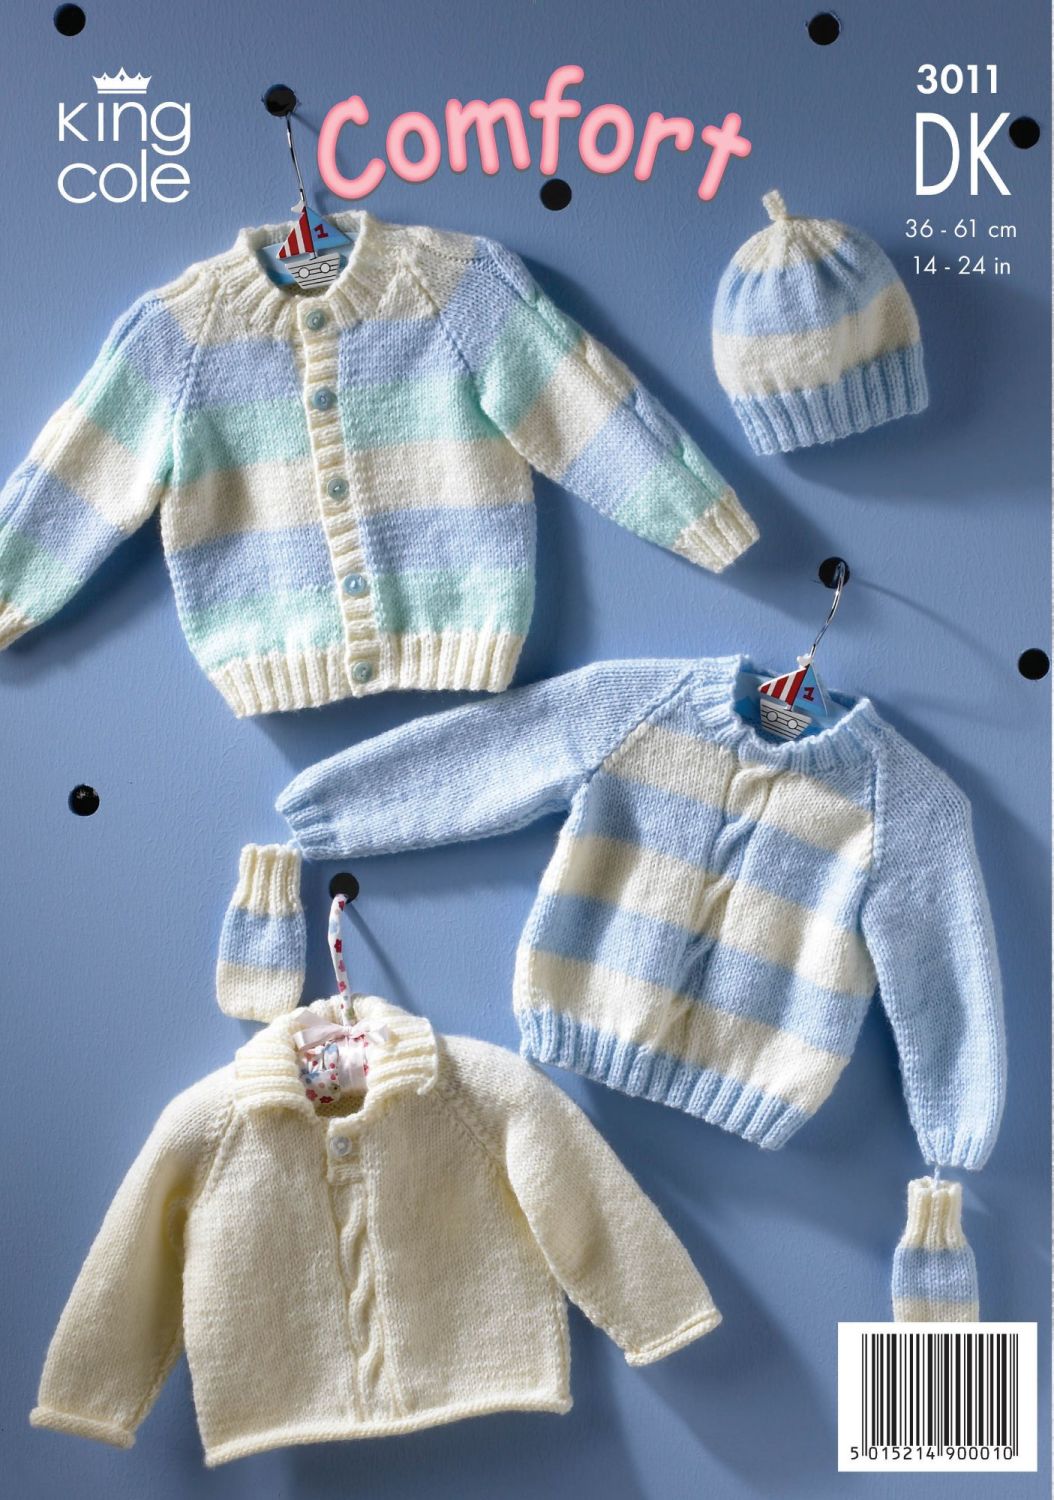 3011 COMFORT DK - Knitting Pattern Babies